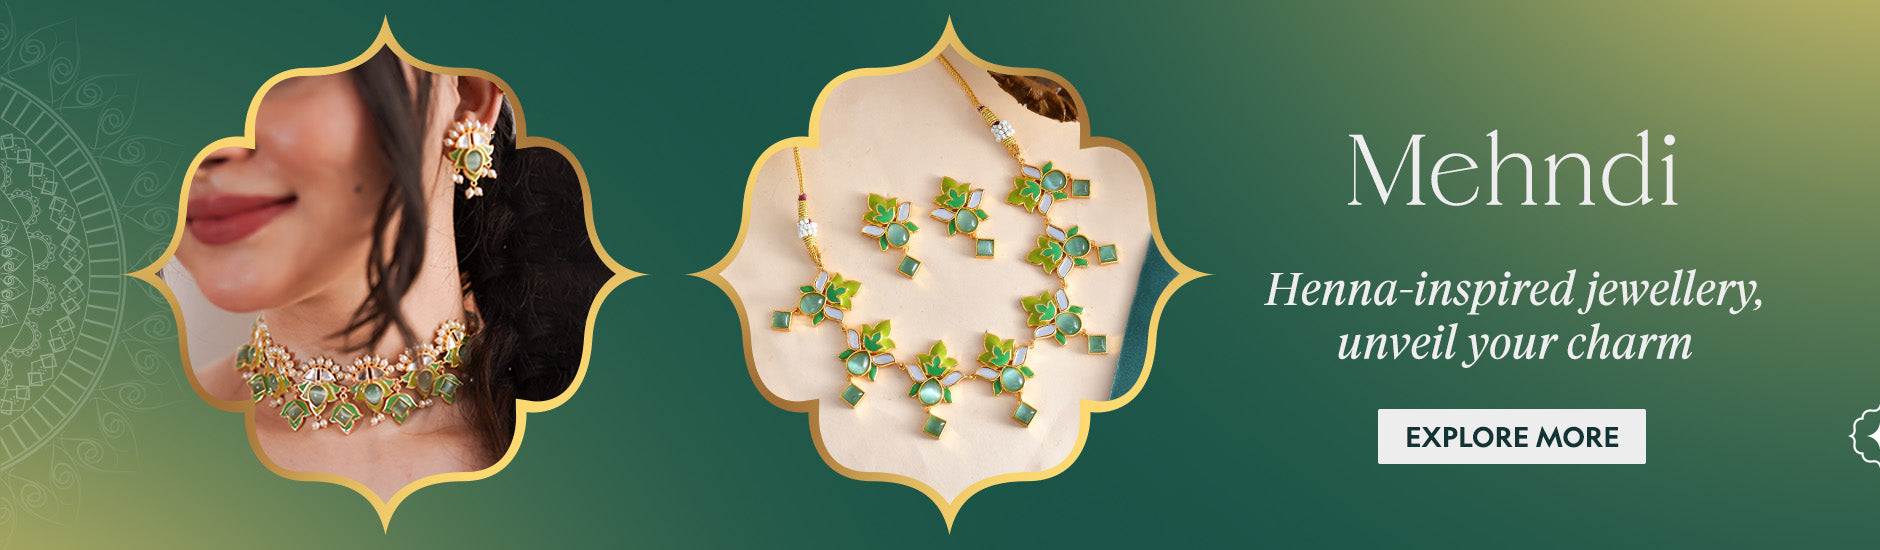 voylla.com - Heena inspired jewellery for the Mehndi ceremony